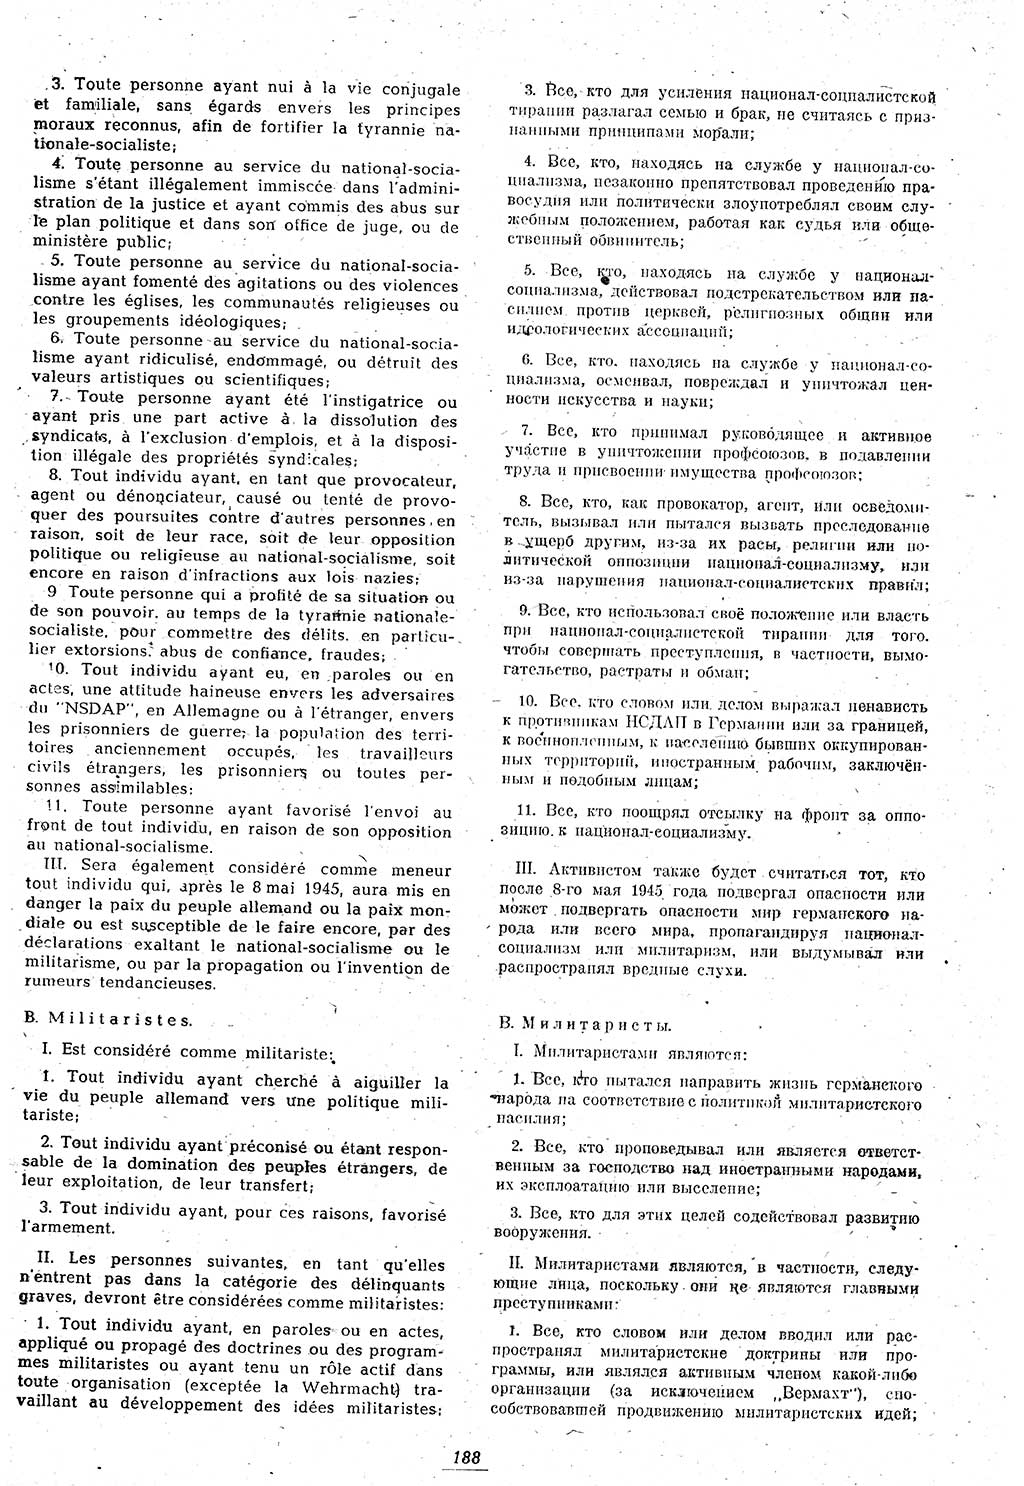 Amtsblatt des Kontrollrats (ABlKR) in Deutschland 1946, Seite 188/1 (ABlKR Dtl. 1946, S. 188/1)